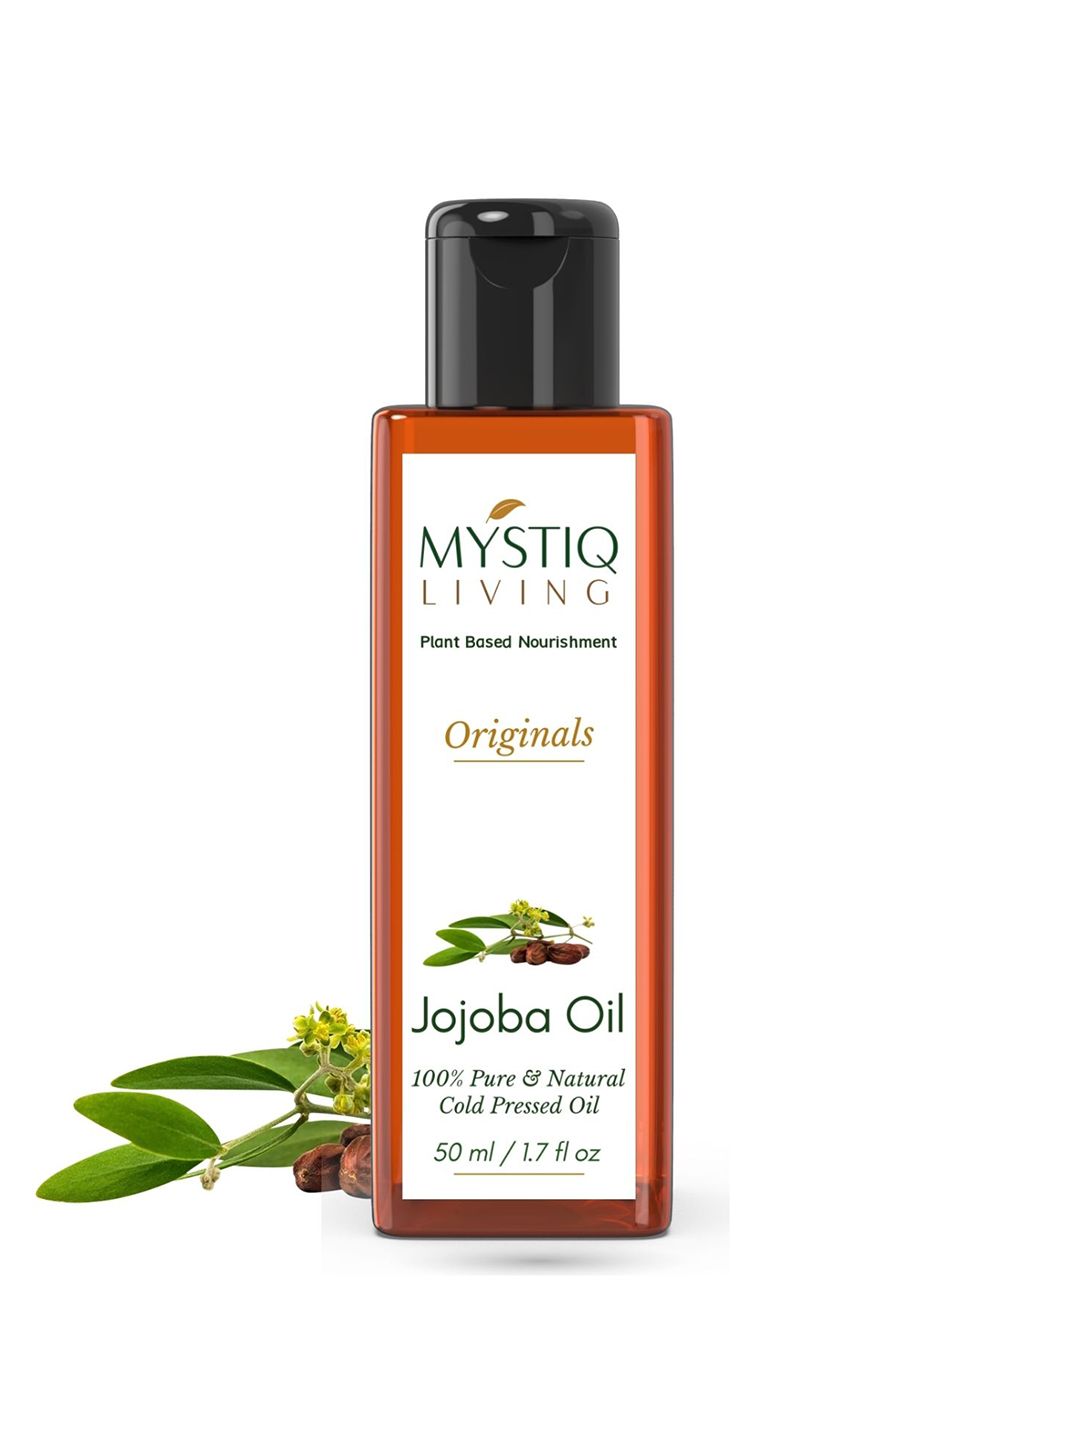 Mystiq Living Originals - Cold Pressed Jojoba Oil- 50ml Price in India